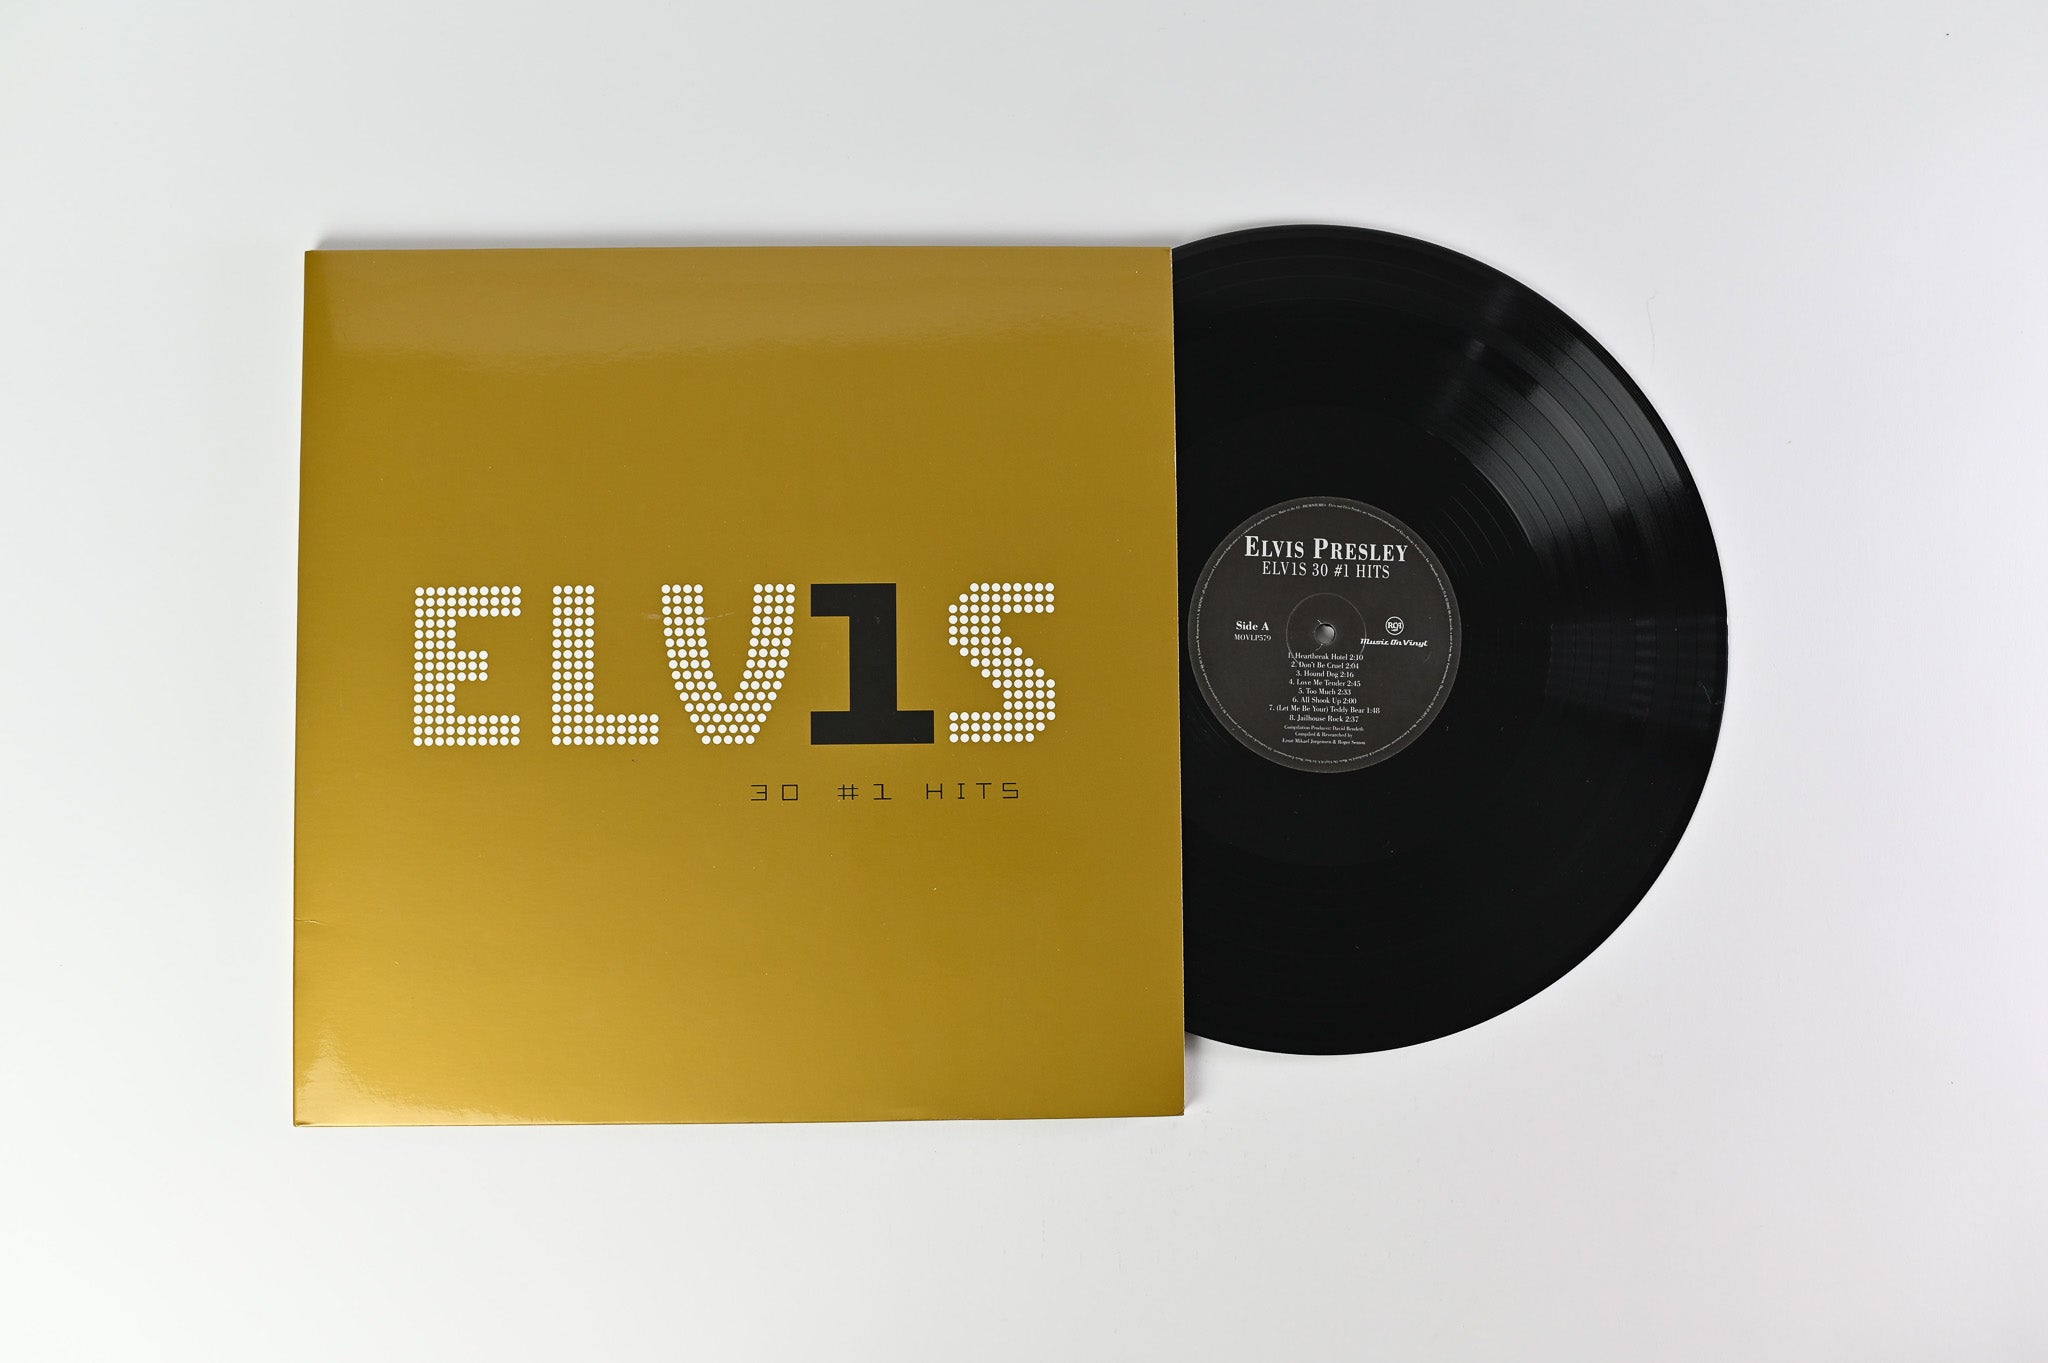 Elvis Presley - ELV1S 30 #1 Hits on Music On Vinyl